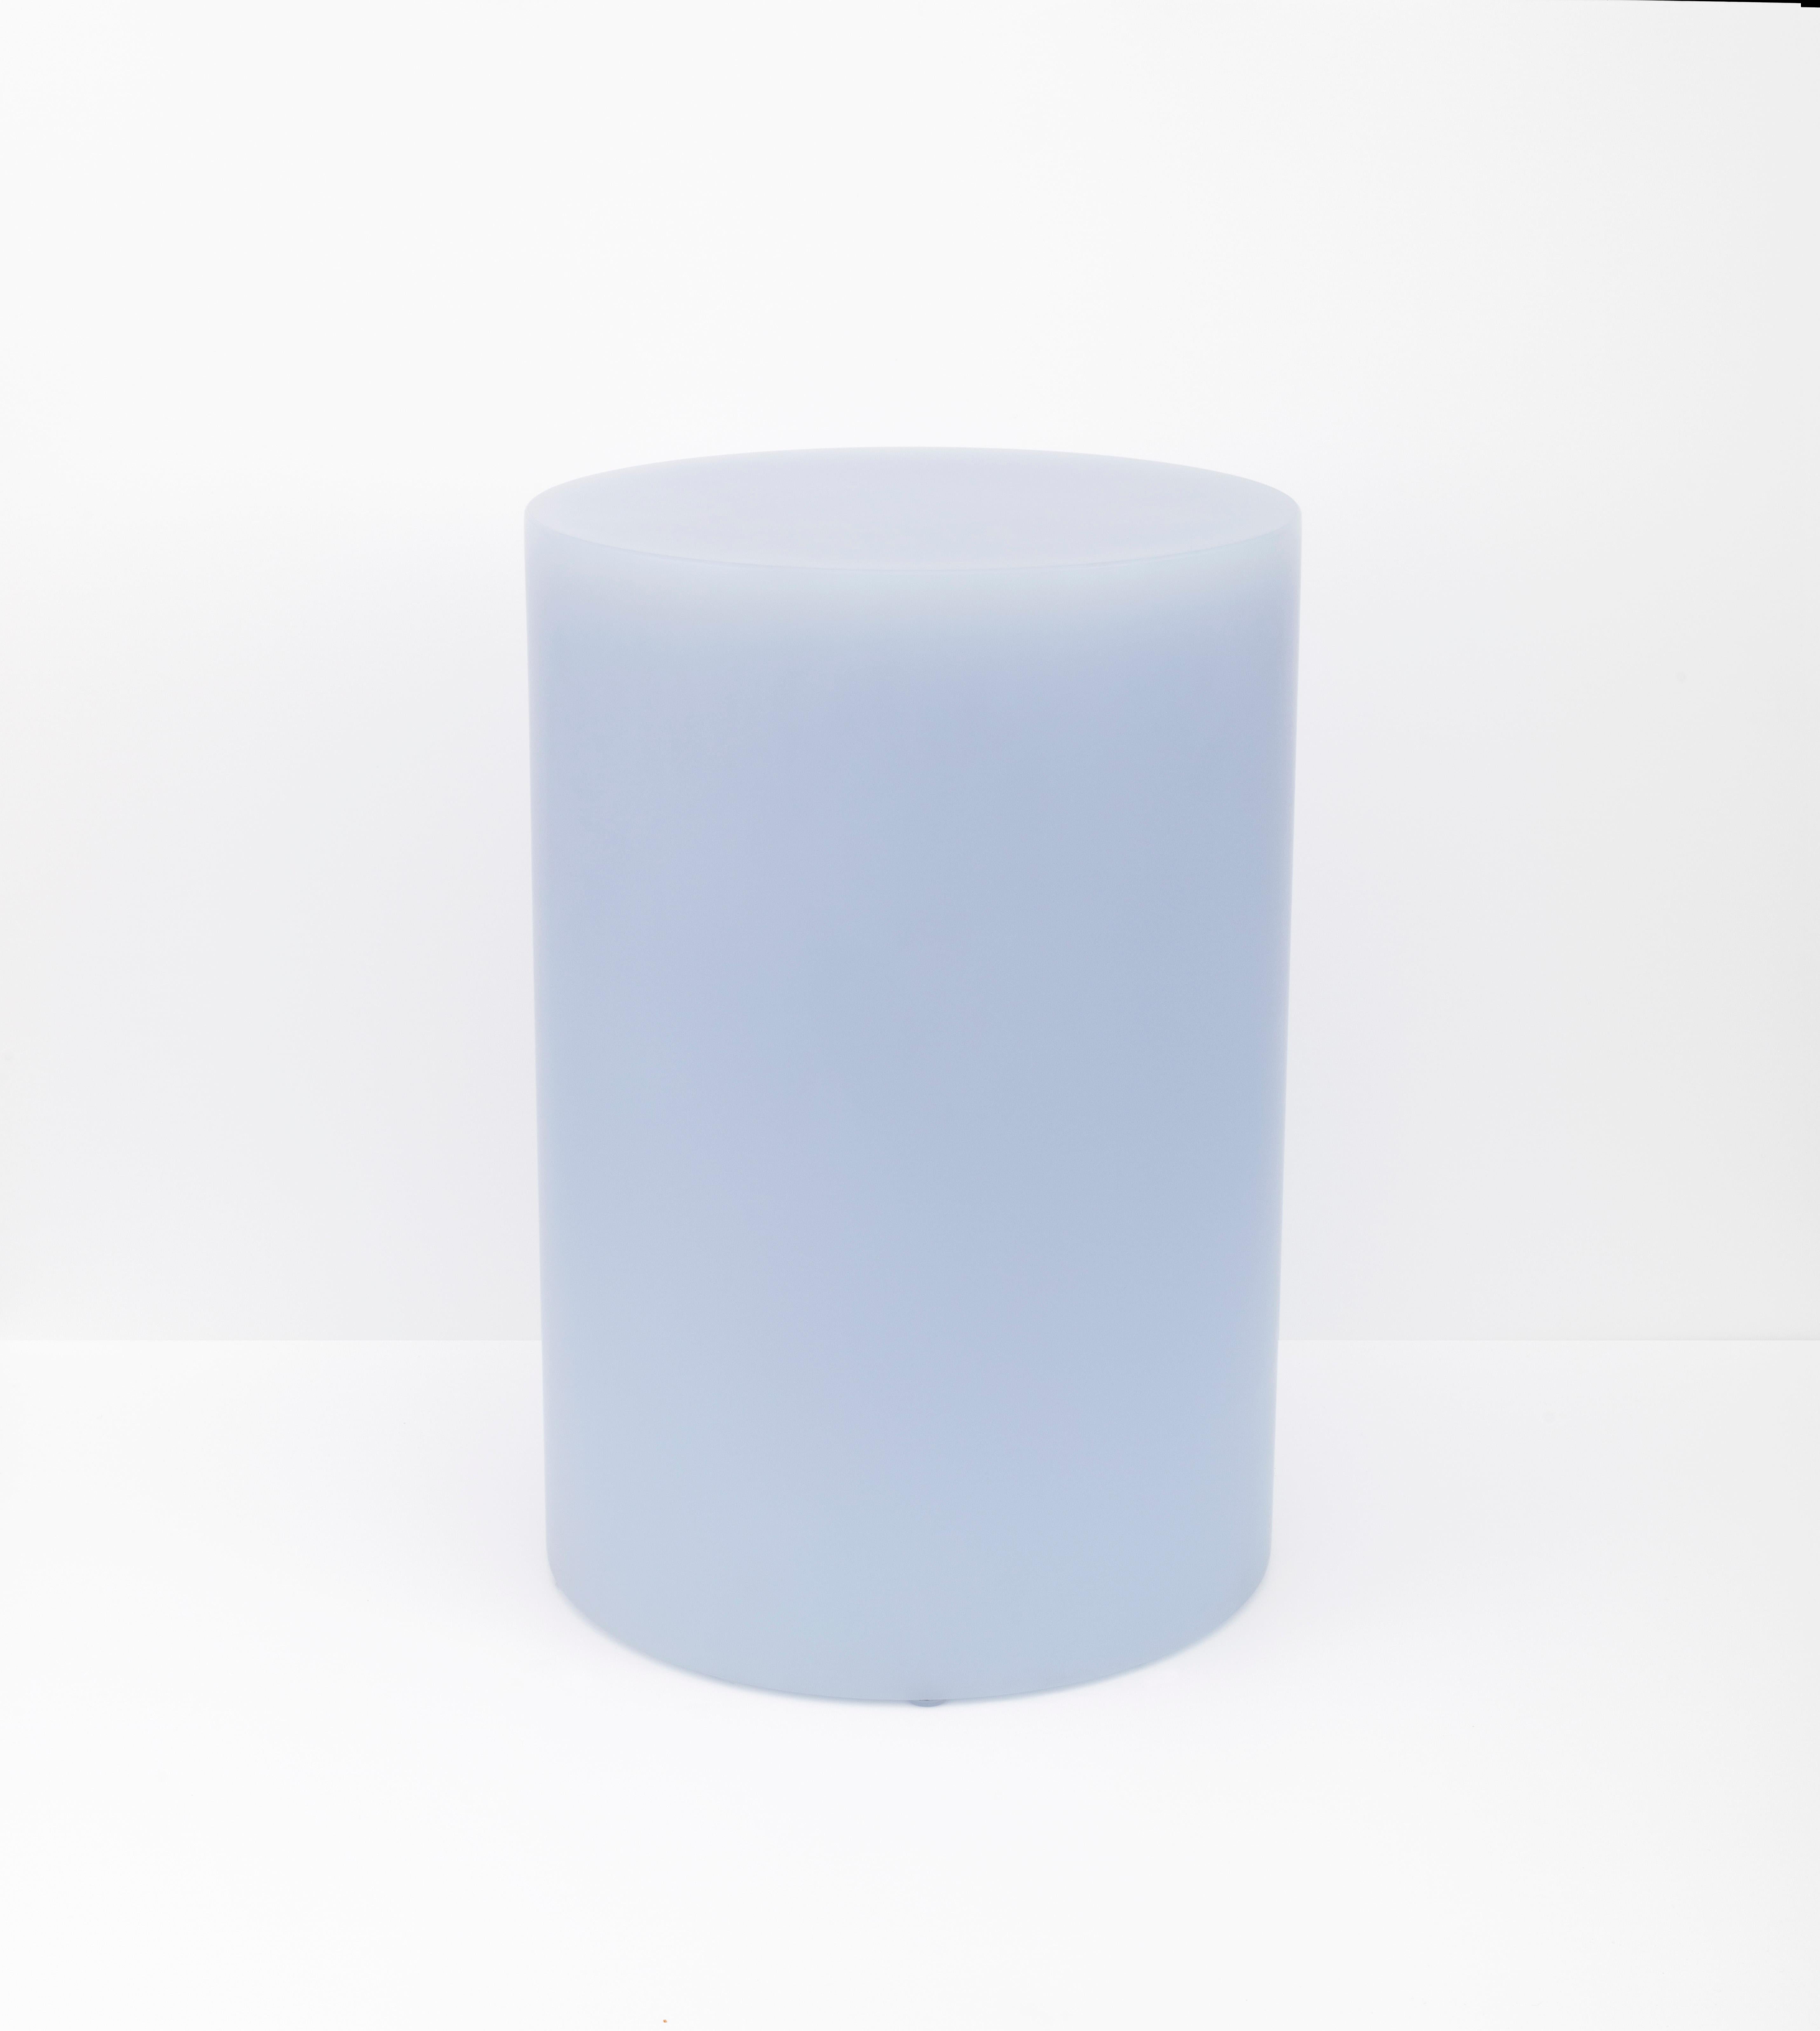 Les nouveaux tabourets colonnes SOAP de Sabine Marcelis, de couleur lavande glacée et en résine mate, sont dévoilés au NOMAD Monaco 2018, créant une mise en scène pastel et sculpturale avec la nouvelle table ronde SOAP.